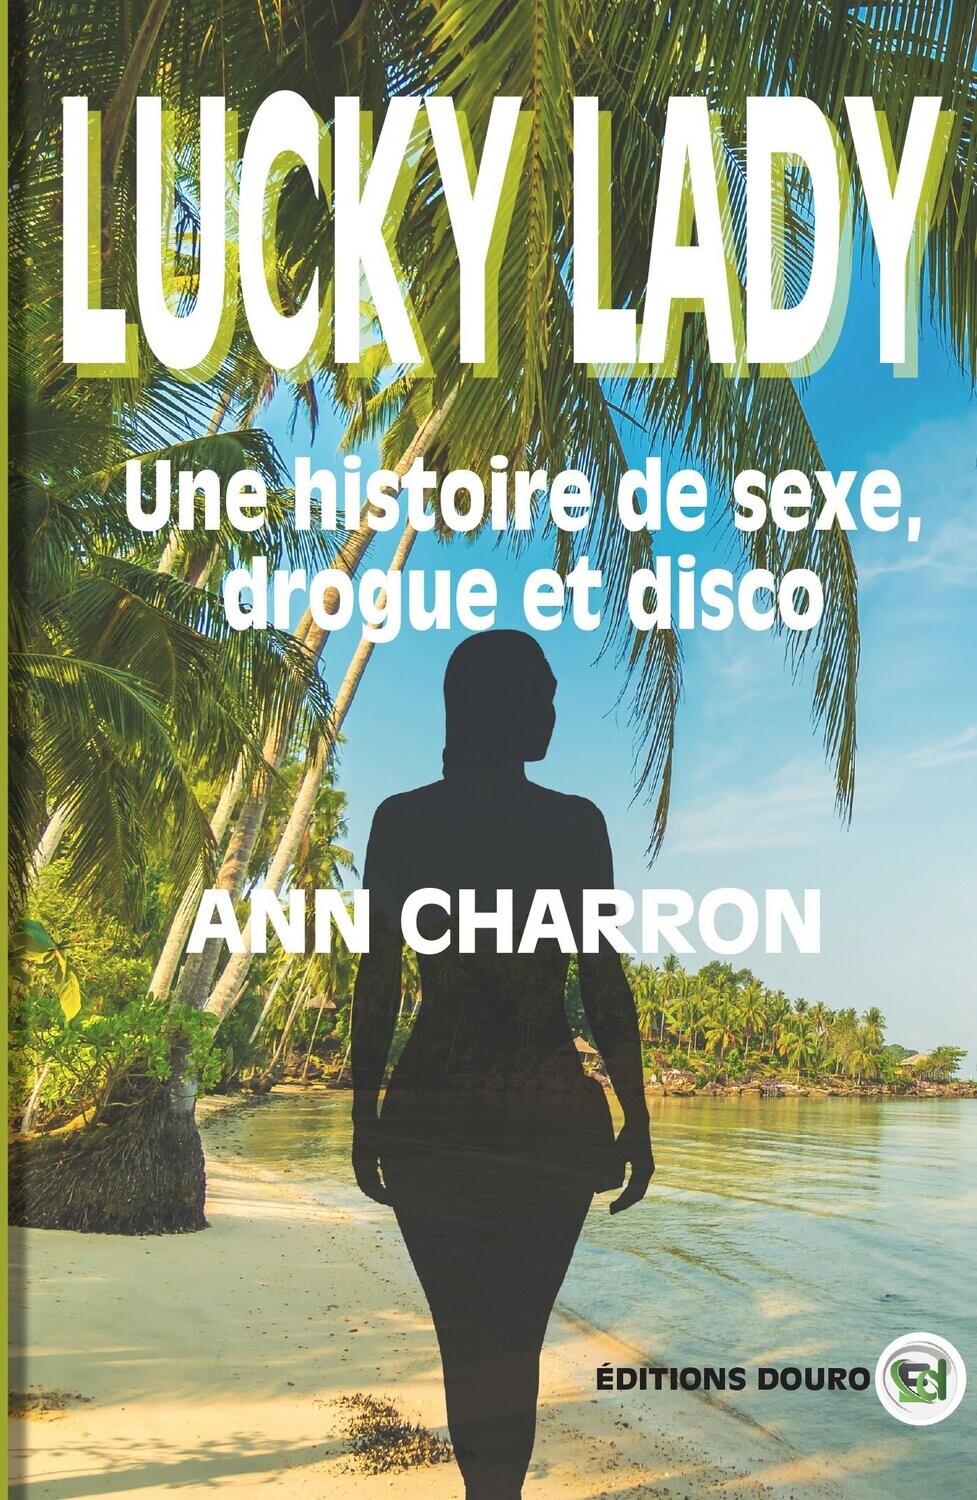 Lucky Lady, une histoire de sexe, drogue et disco